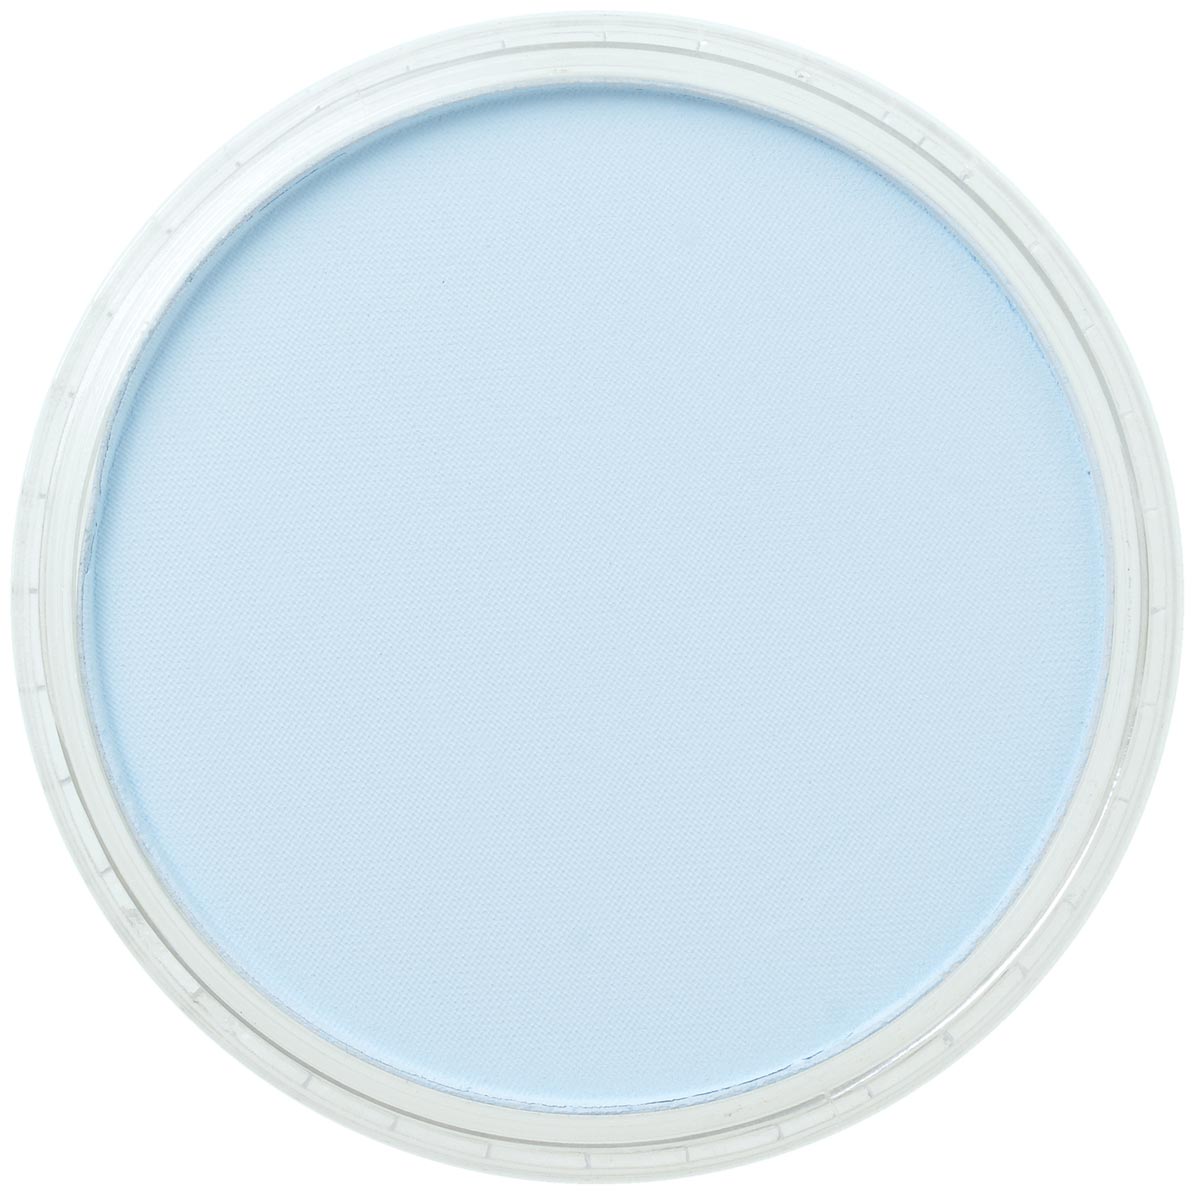 Pan Pastel Phthalo Blue Tint 560.8